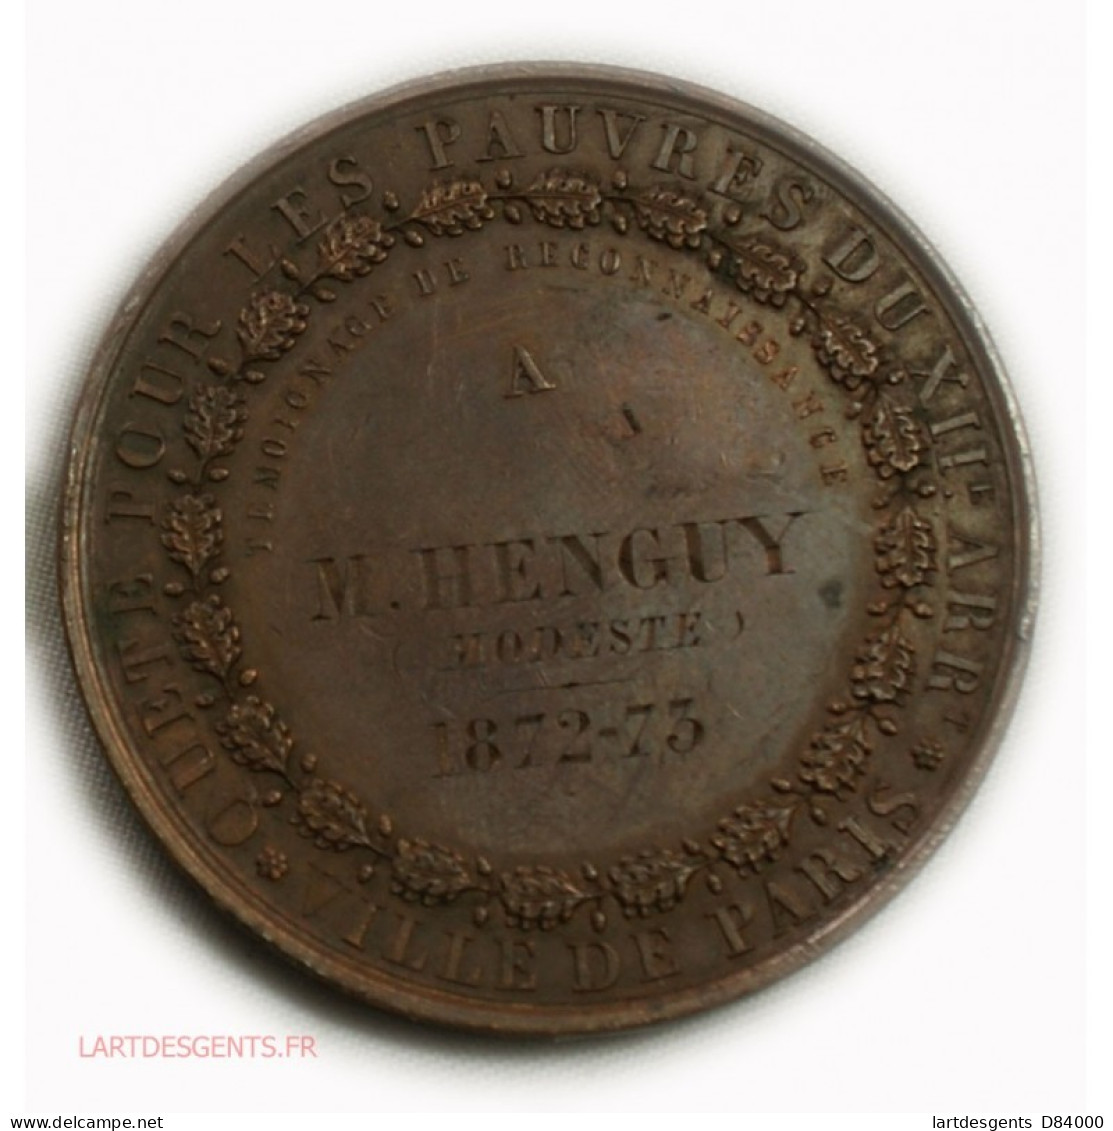 Médaille Quête Pour Les Pauvres 2ème Arrond. Paris 1872-73, Lartdesgents - Adel